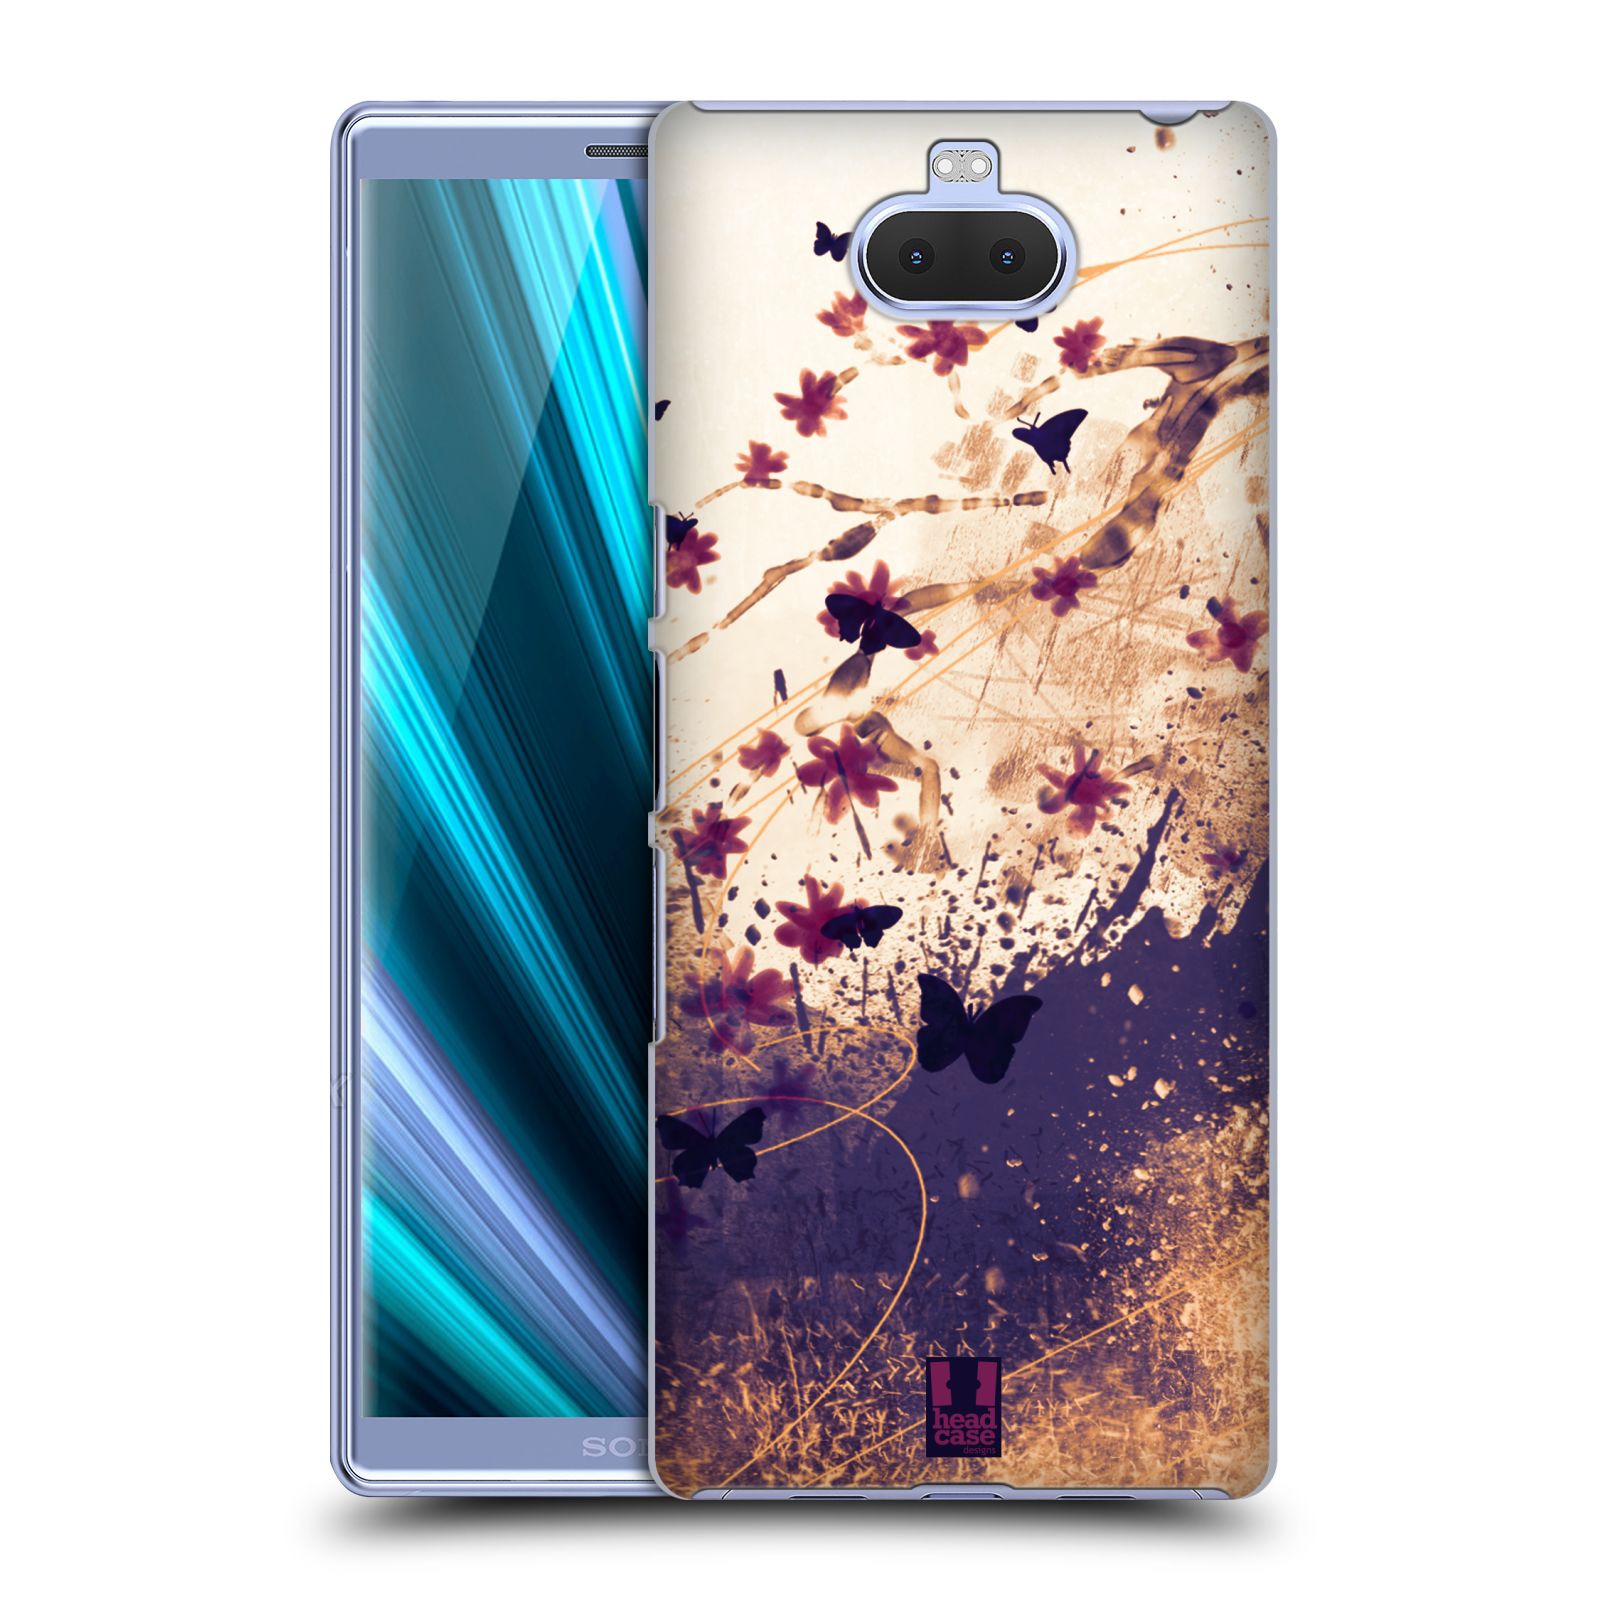 Zadní obal pro mobil Sony Xperia 10 ULTRA - HEAD CASE - Barevné květy a motýlci